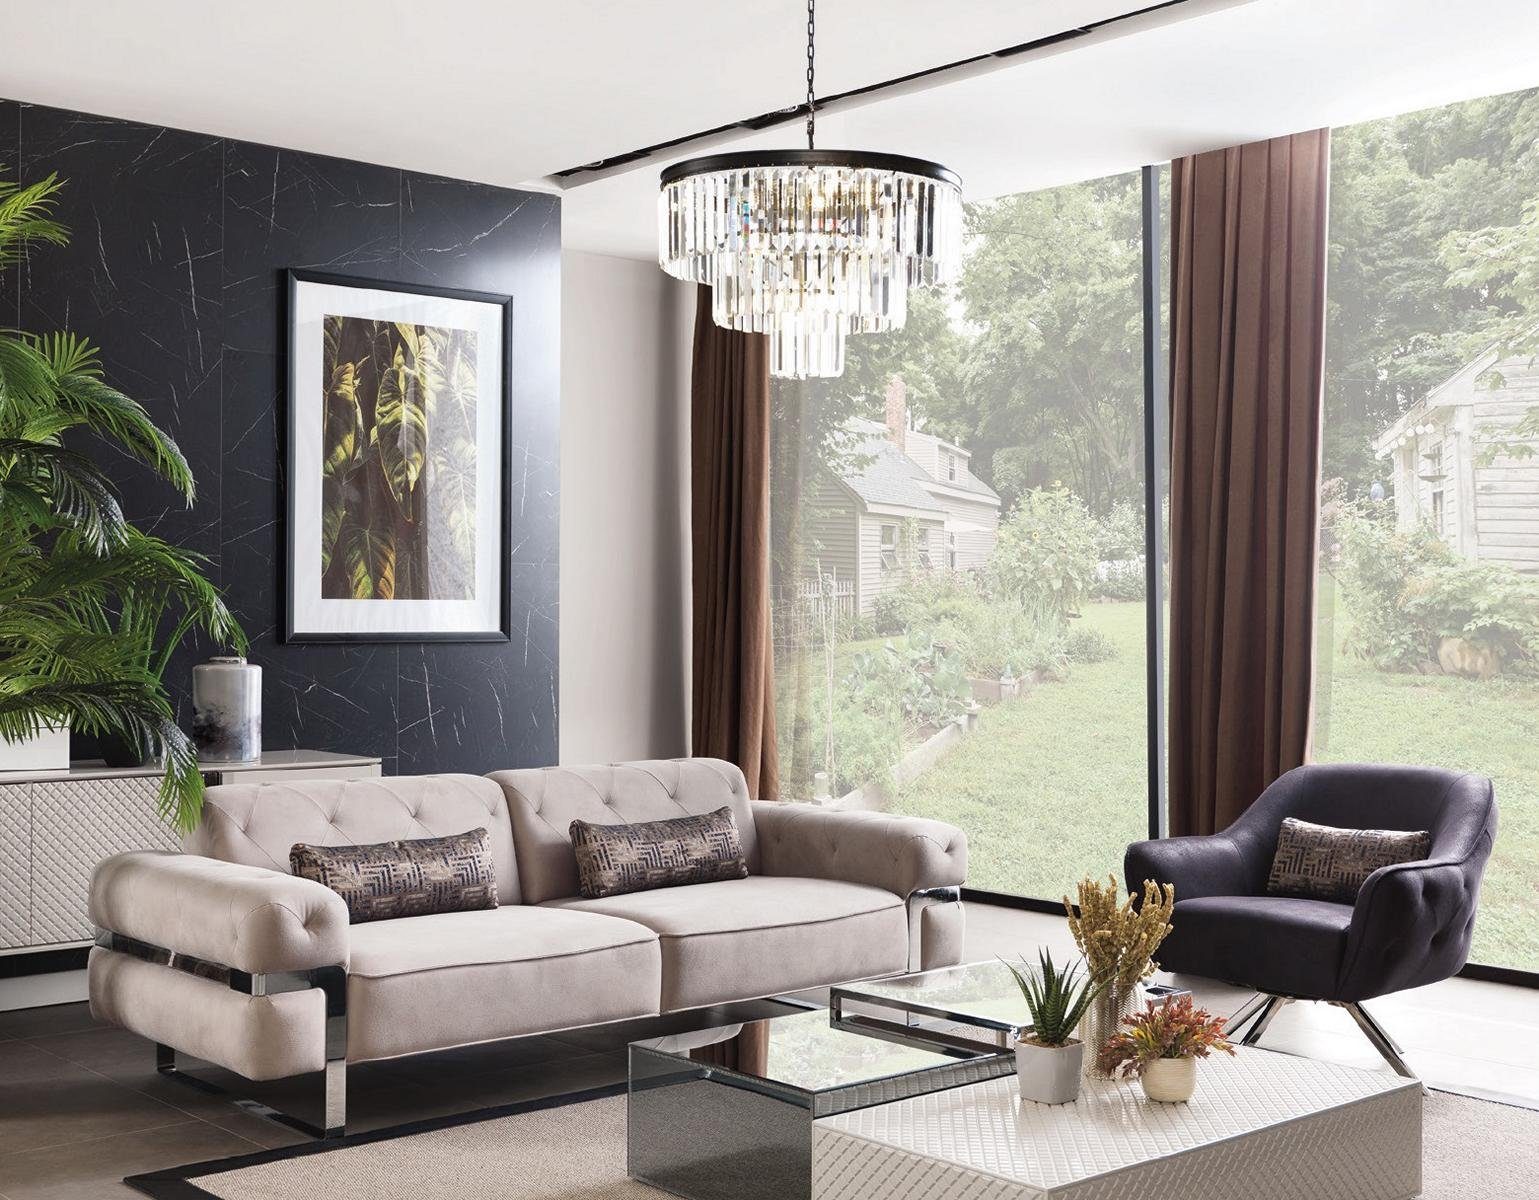 JVmoebel Sofa, Sofagarnitur 3 1 Sitzer Stoff 3x Couchtisch Design Couch Polster Sofas